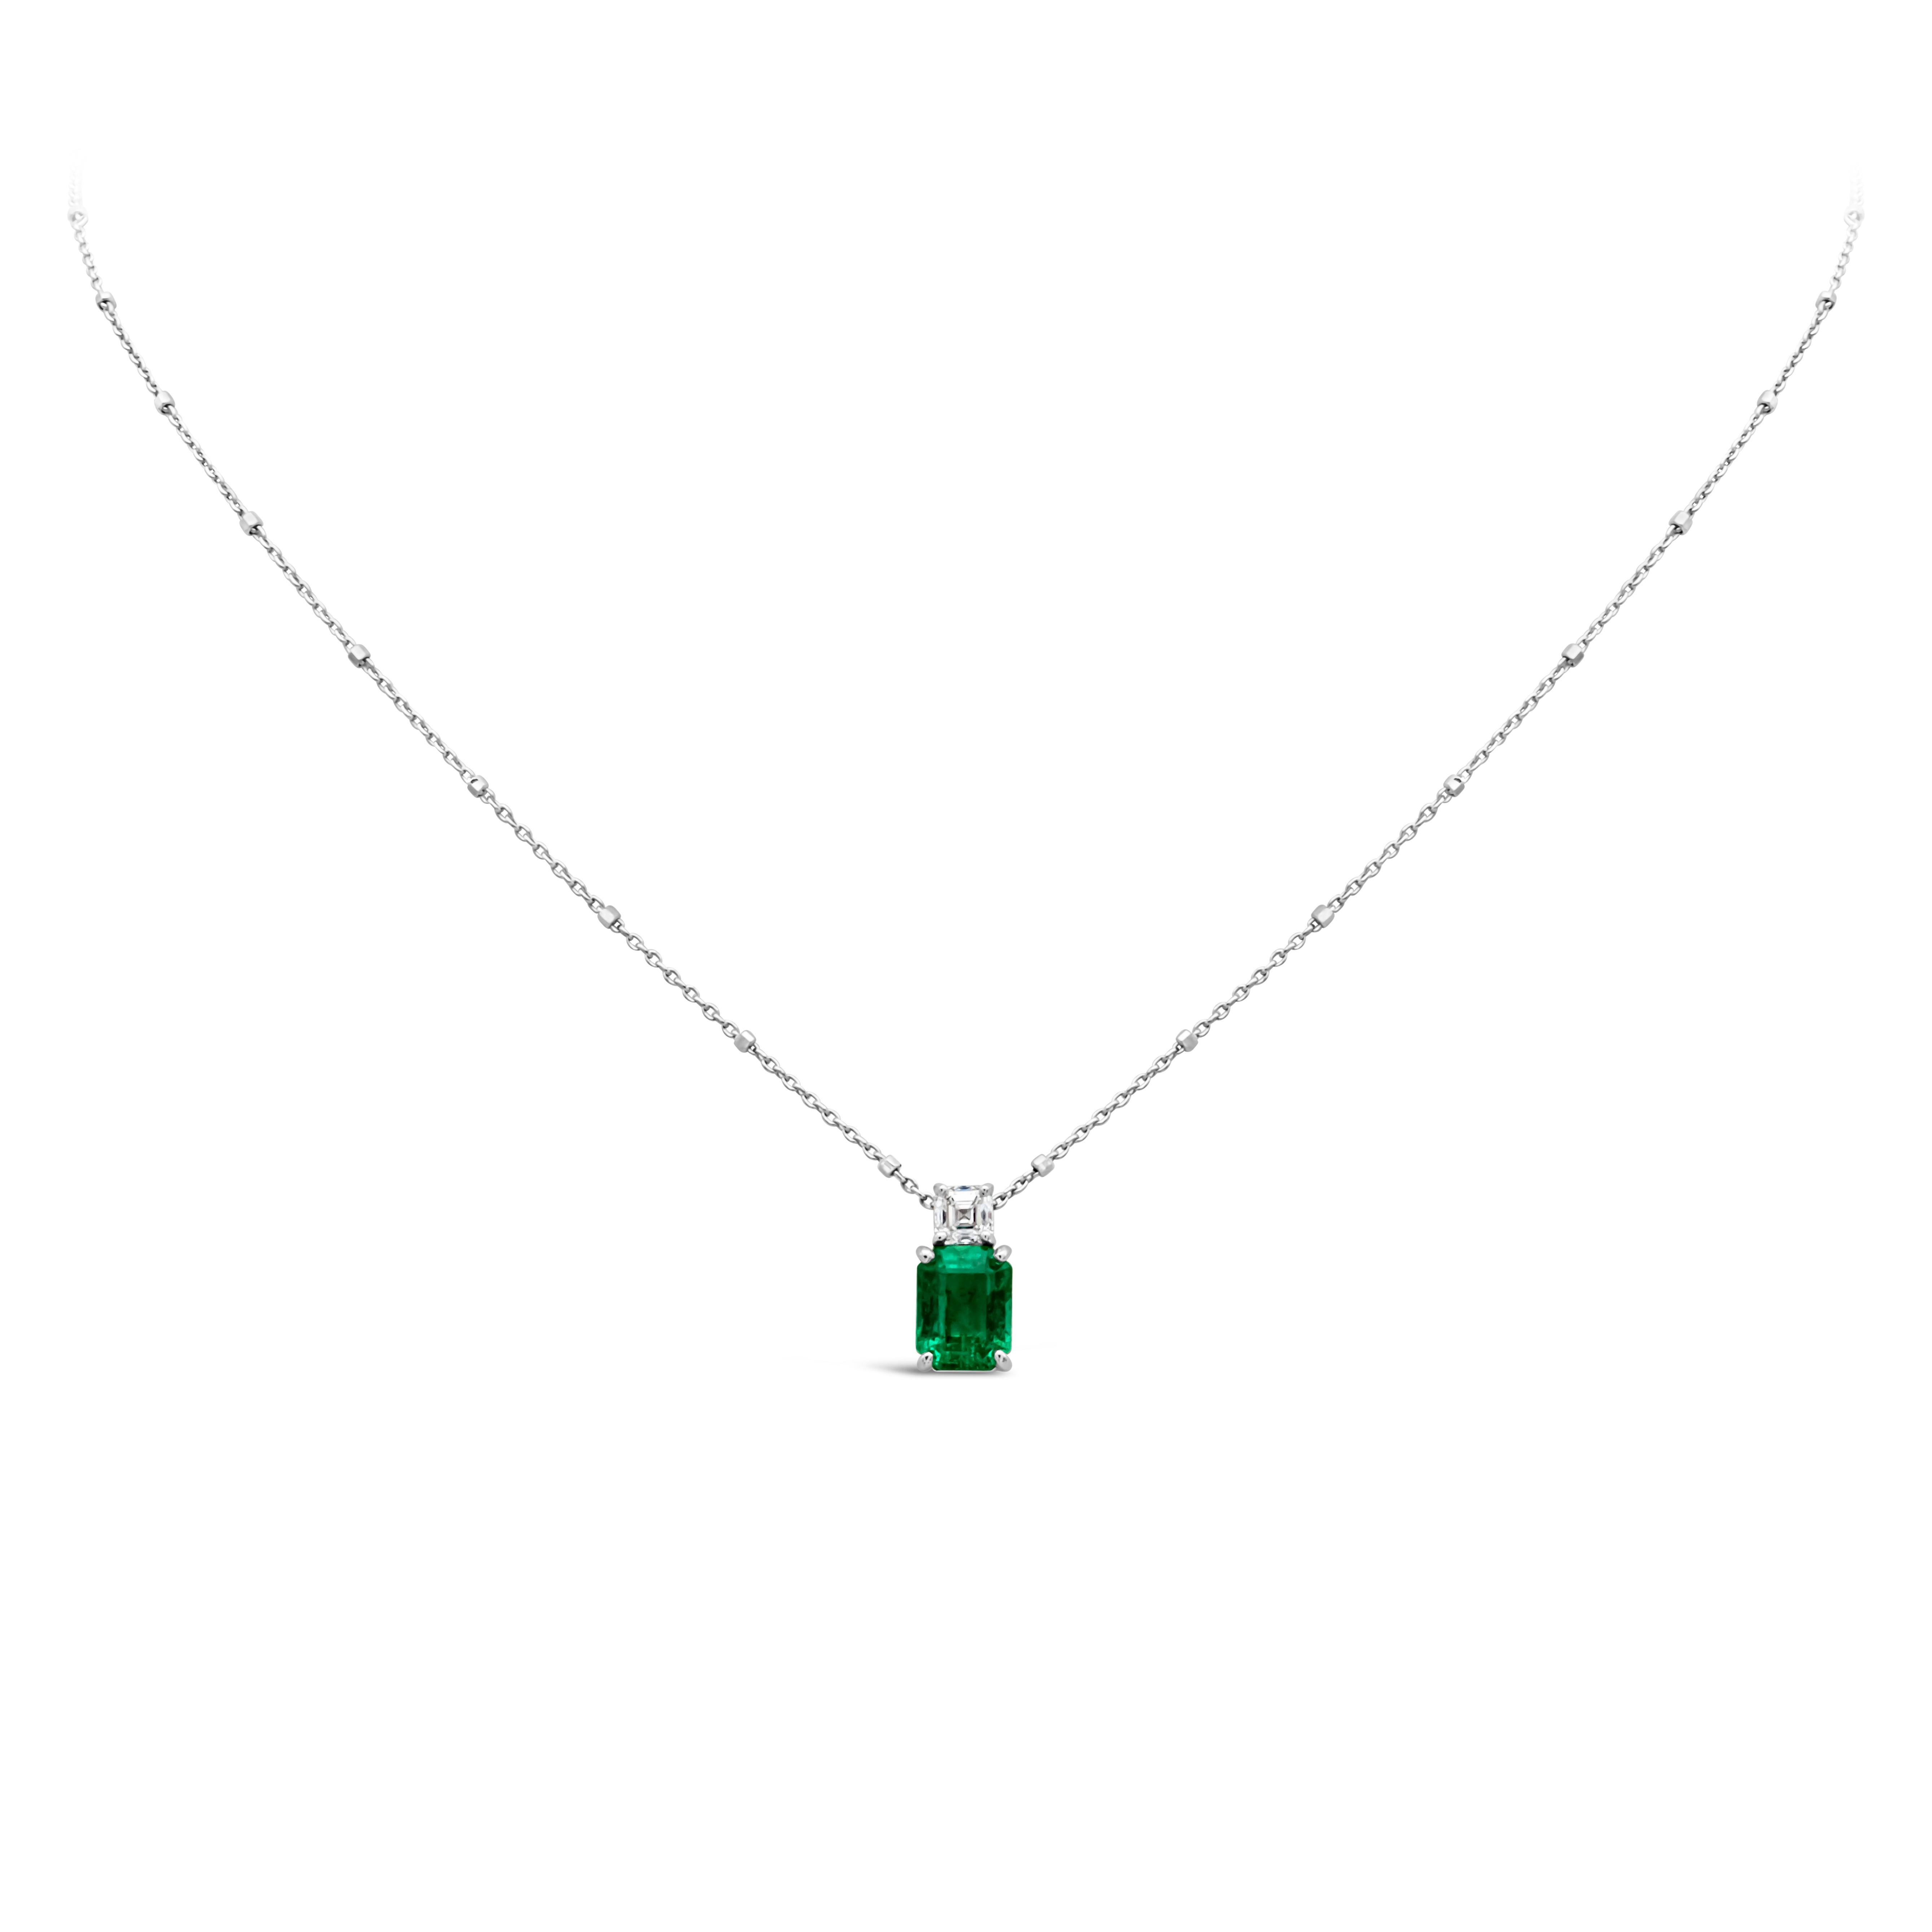 Un charmant collier pendentif riche en couleurs mettant en valeur une émeraude verte de taille émeraude pesant 1,27 carats au total, sertie dans un panier en or blanc 18K à quatre griffes, accentué par un seul diamant de taille asscher pesant 0,28